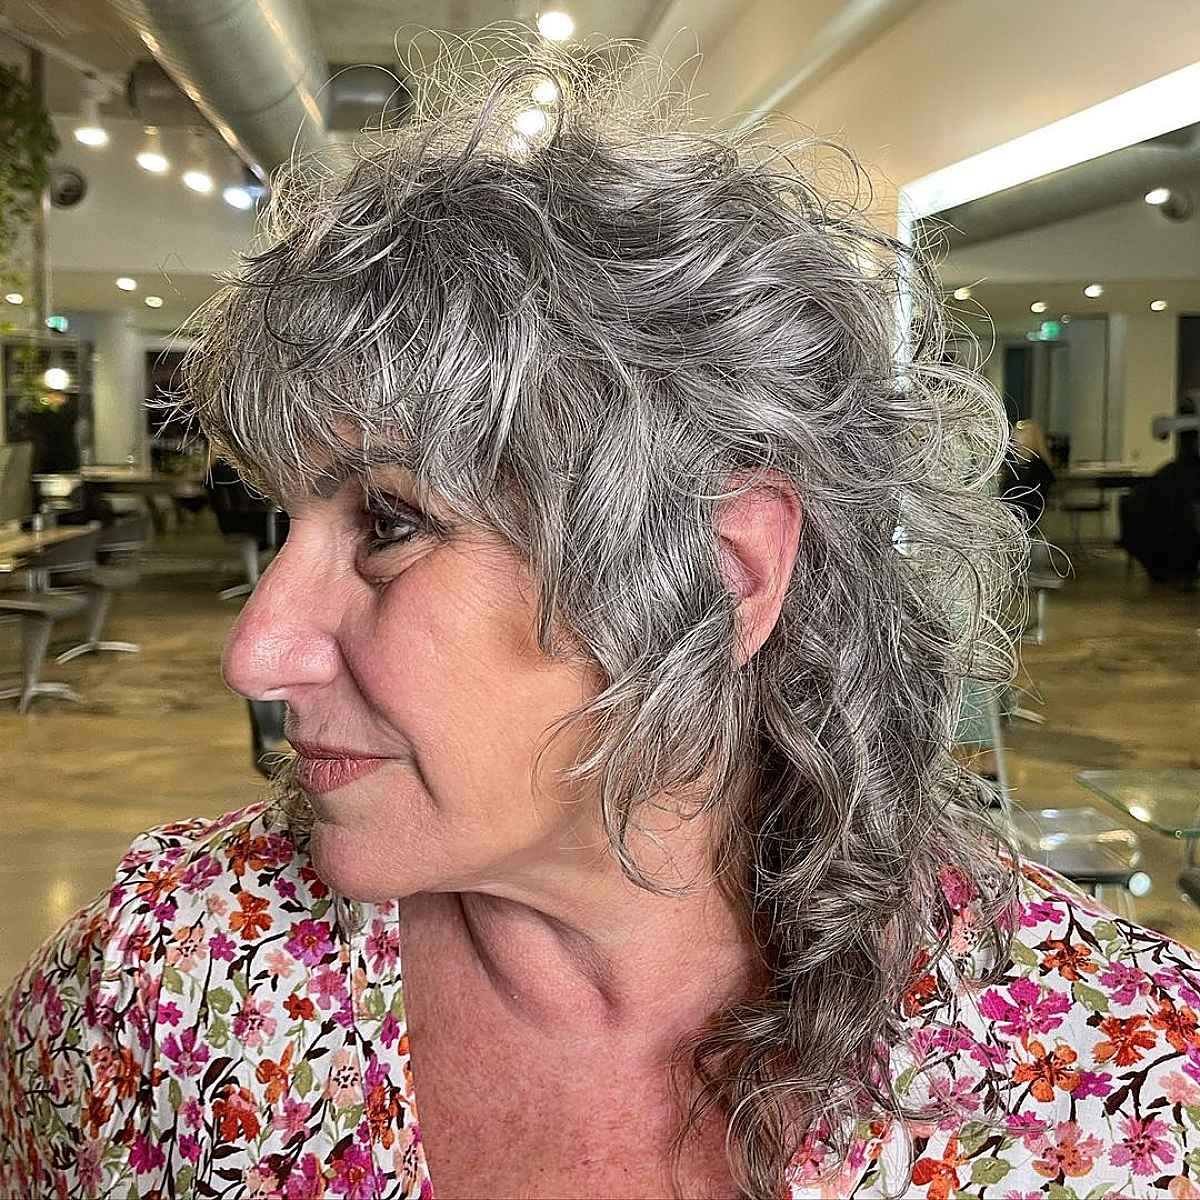 Longer Shaggy Mullet for Fine Hair for Women in Their 70s